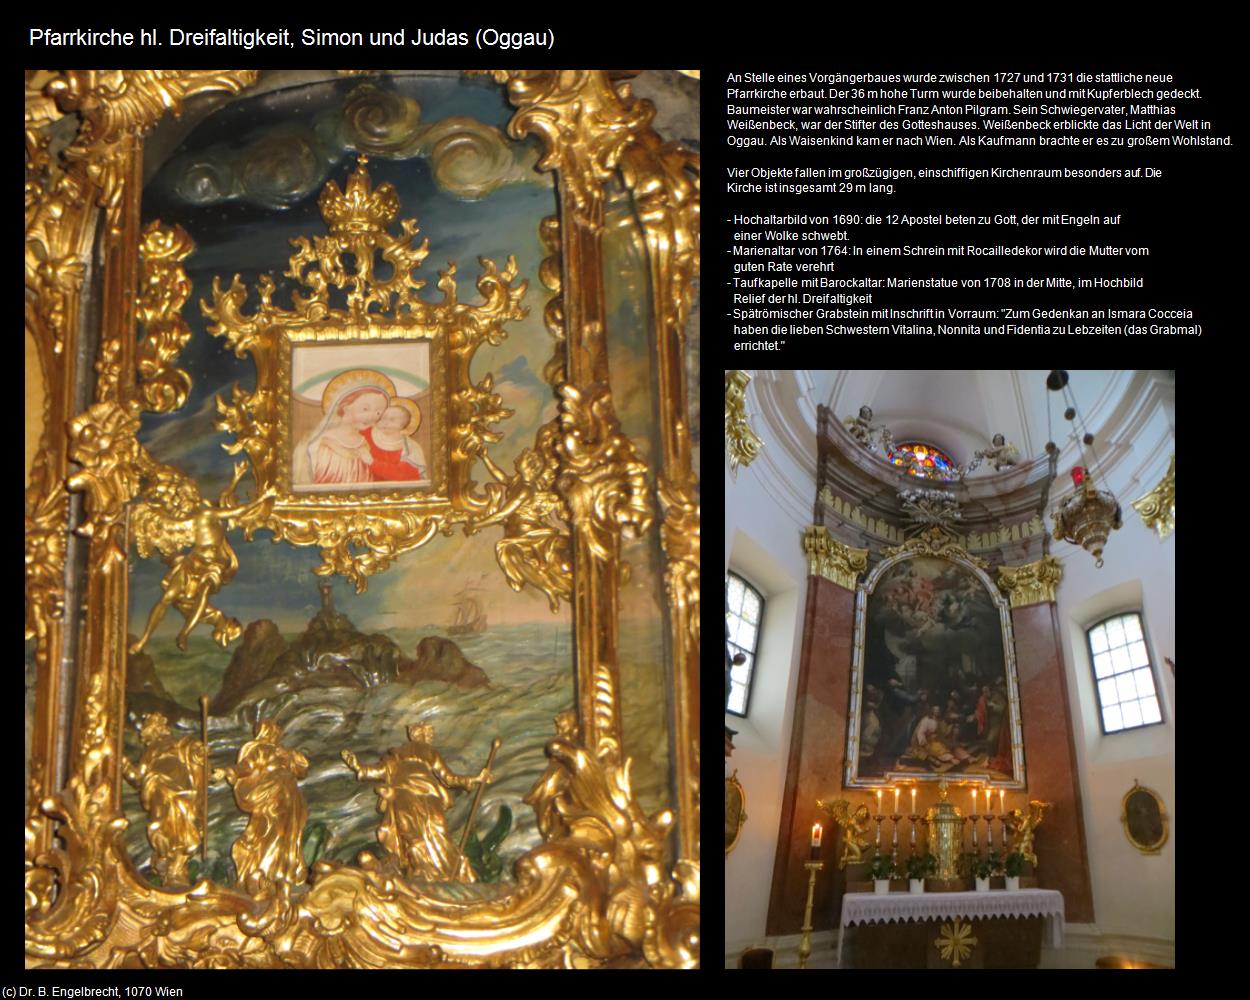 Pfk. Heiligste Dreifaltigkeit und hl. Simon und Judas (Oggau) in Kulturatlas-BURGENLAND